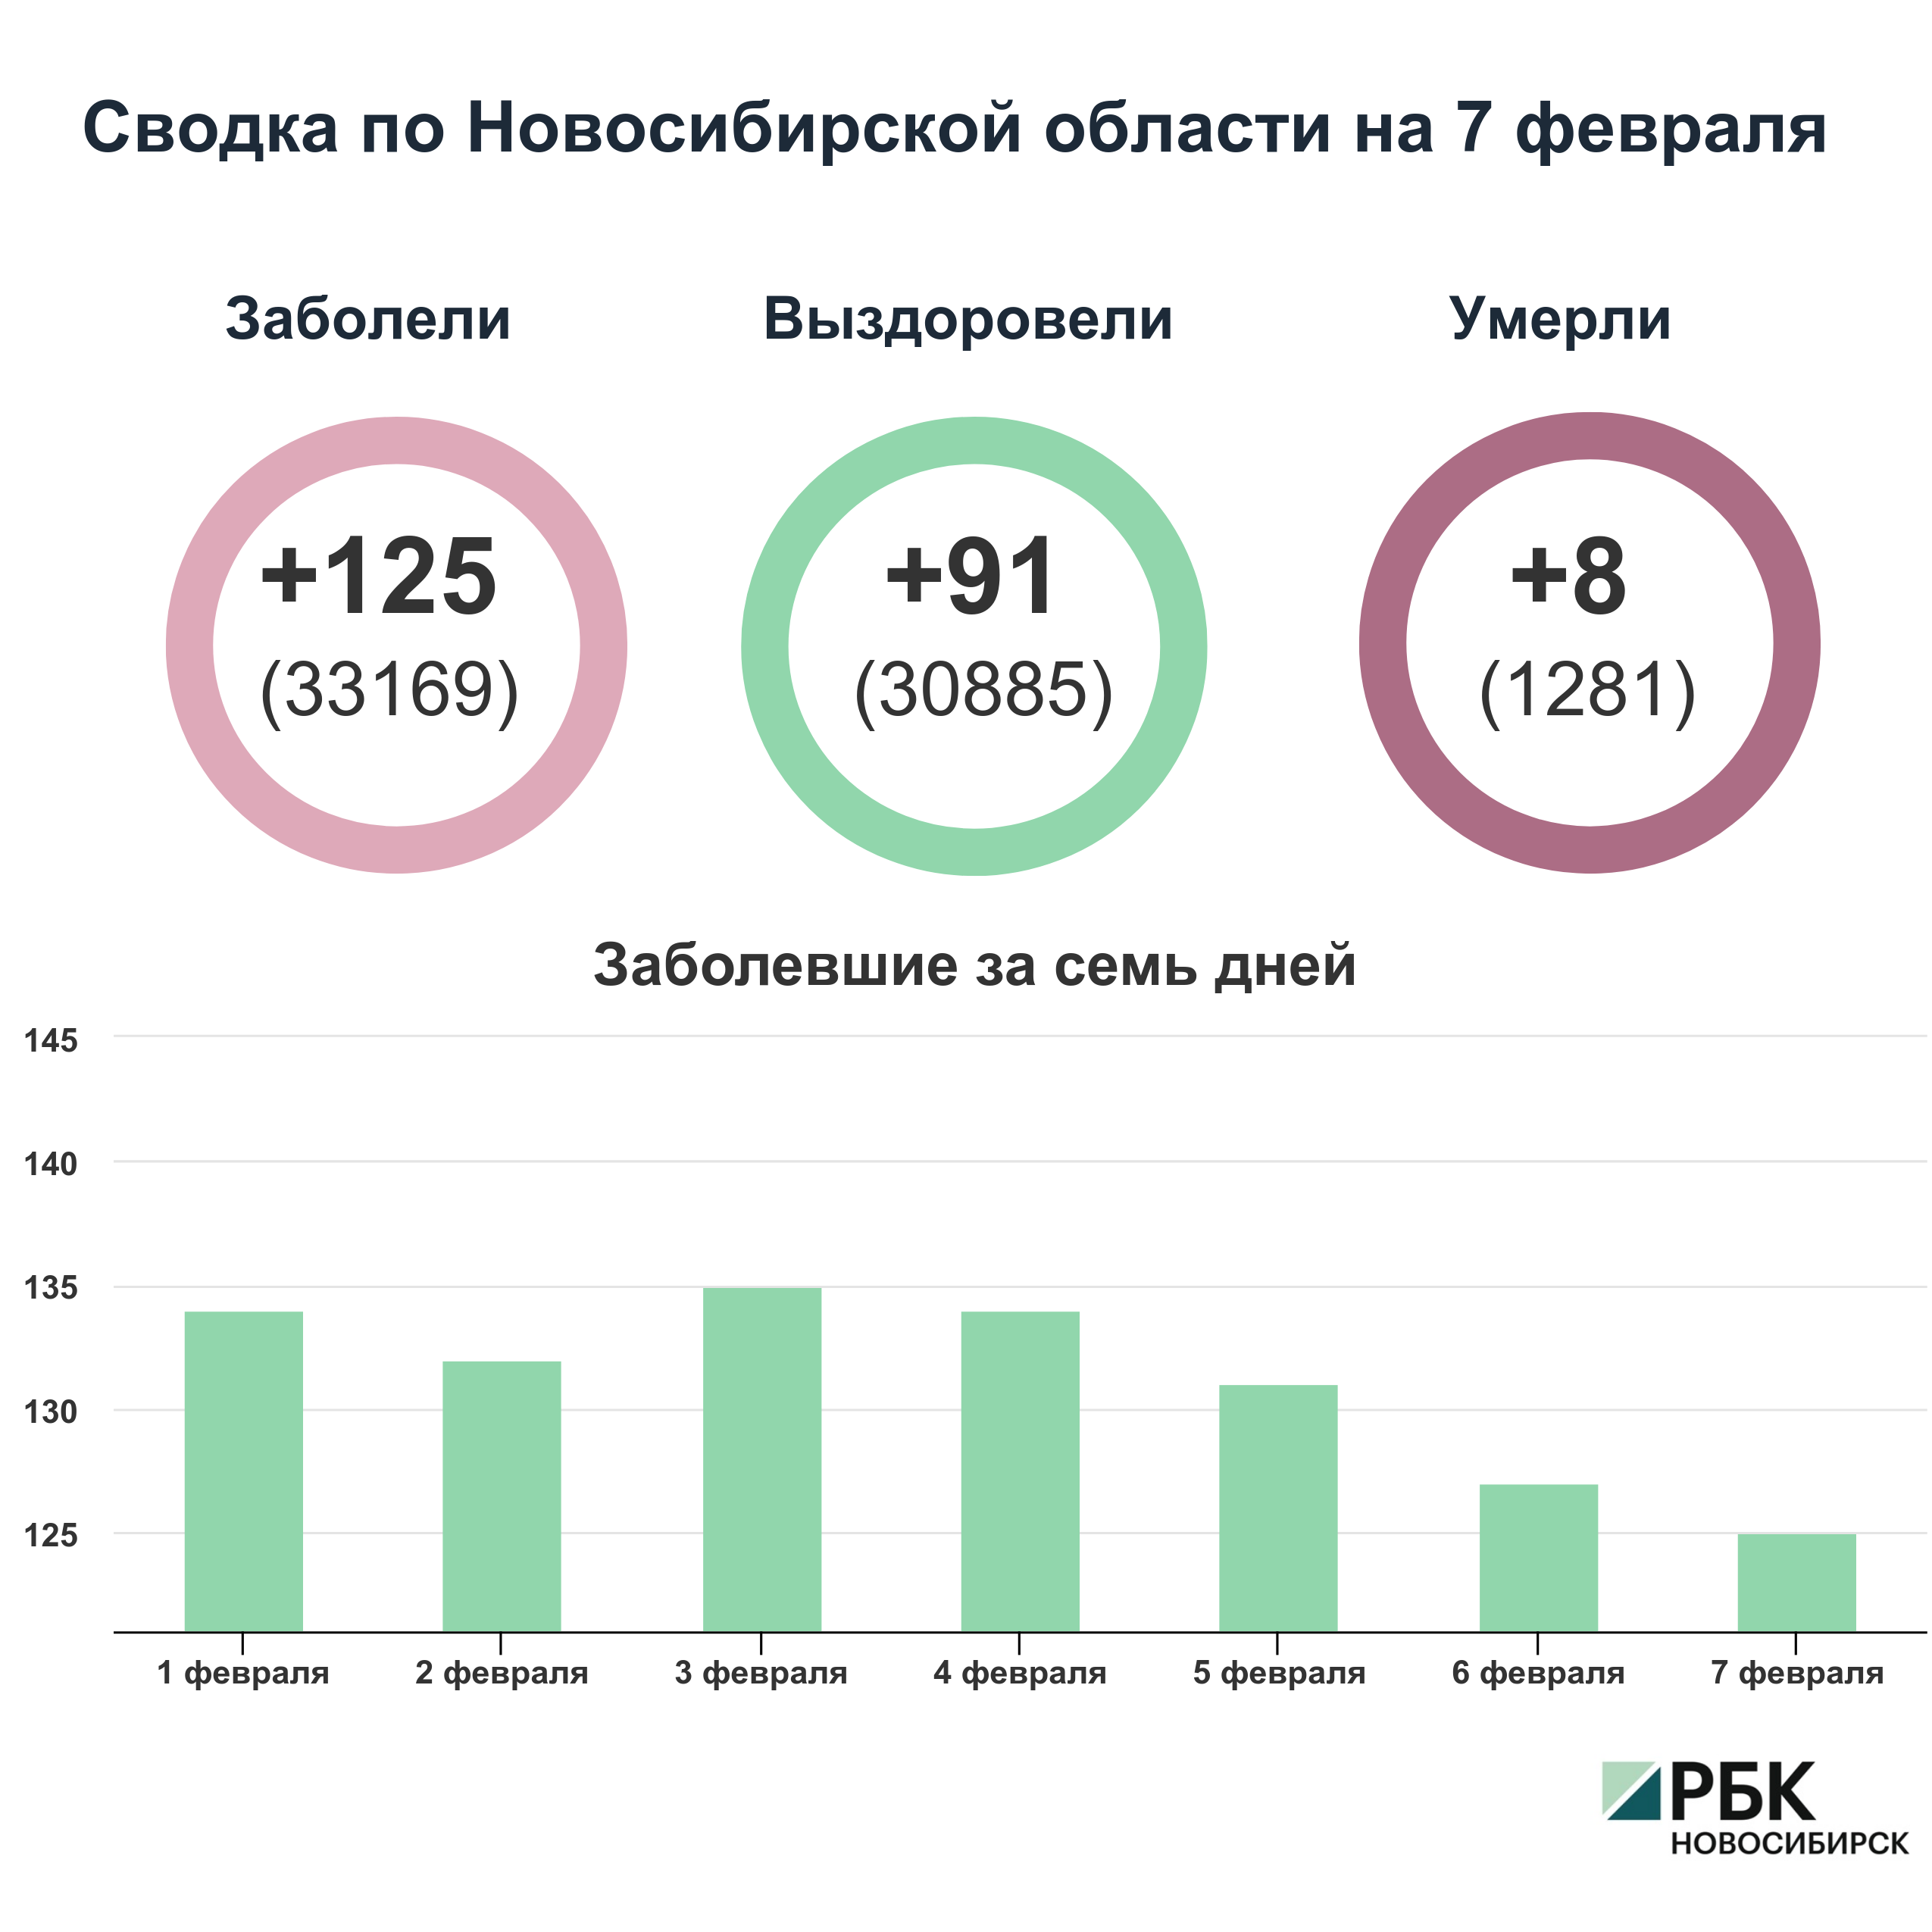 Коронавирус в Новосибирске: сводка на 7 февраля